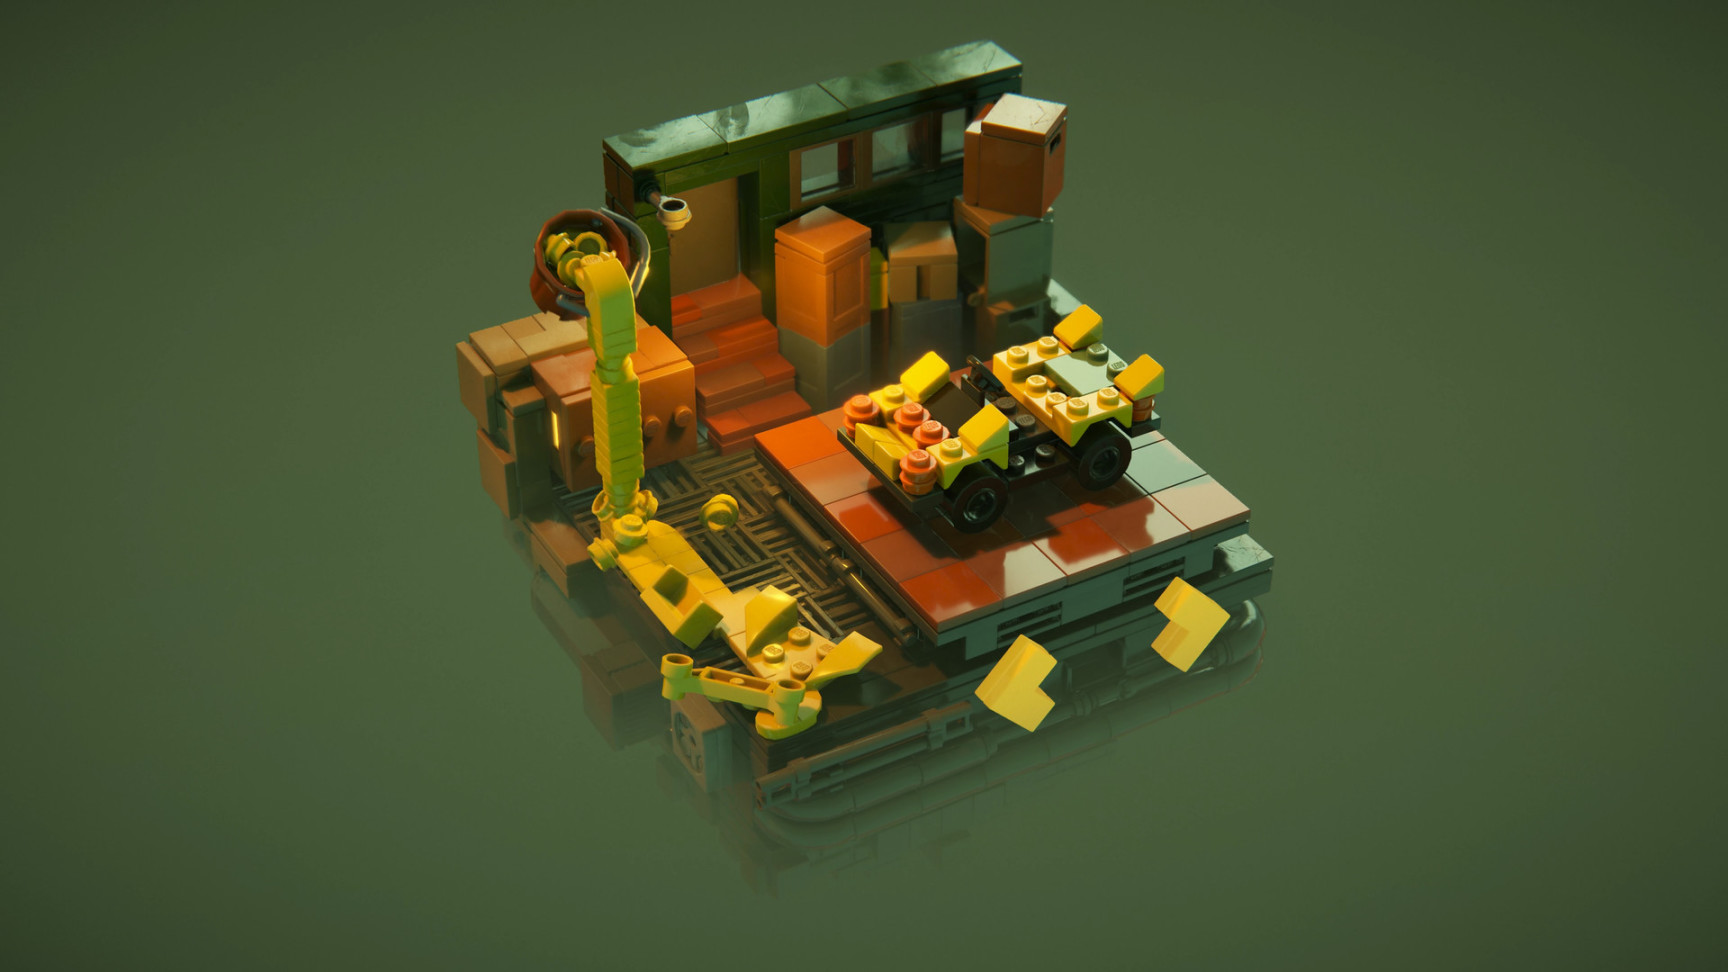 【EPIC】22日神秘游戏为《LEGO建造者之旅》,23日游戏线索公布-第3张